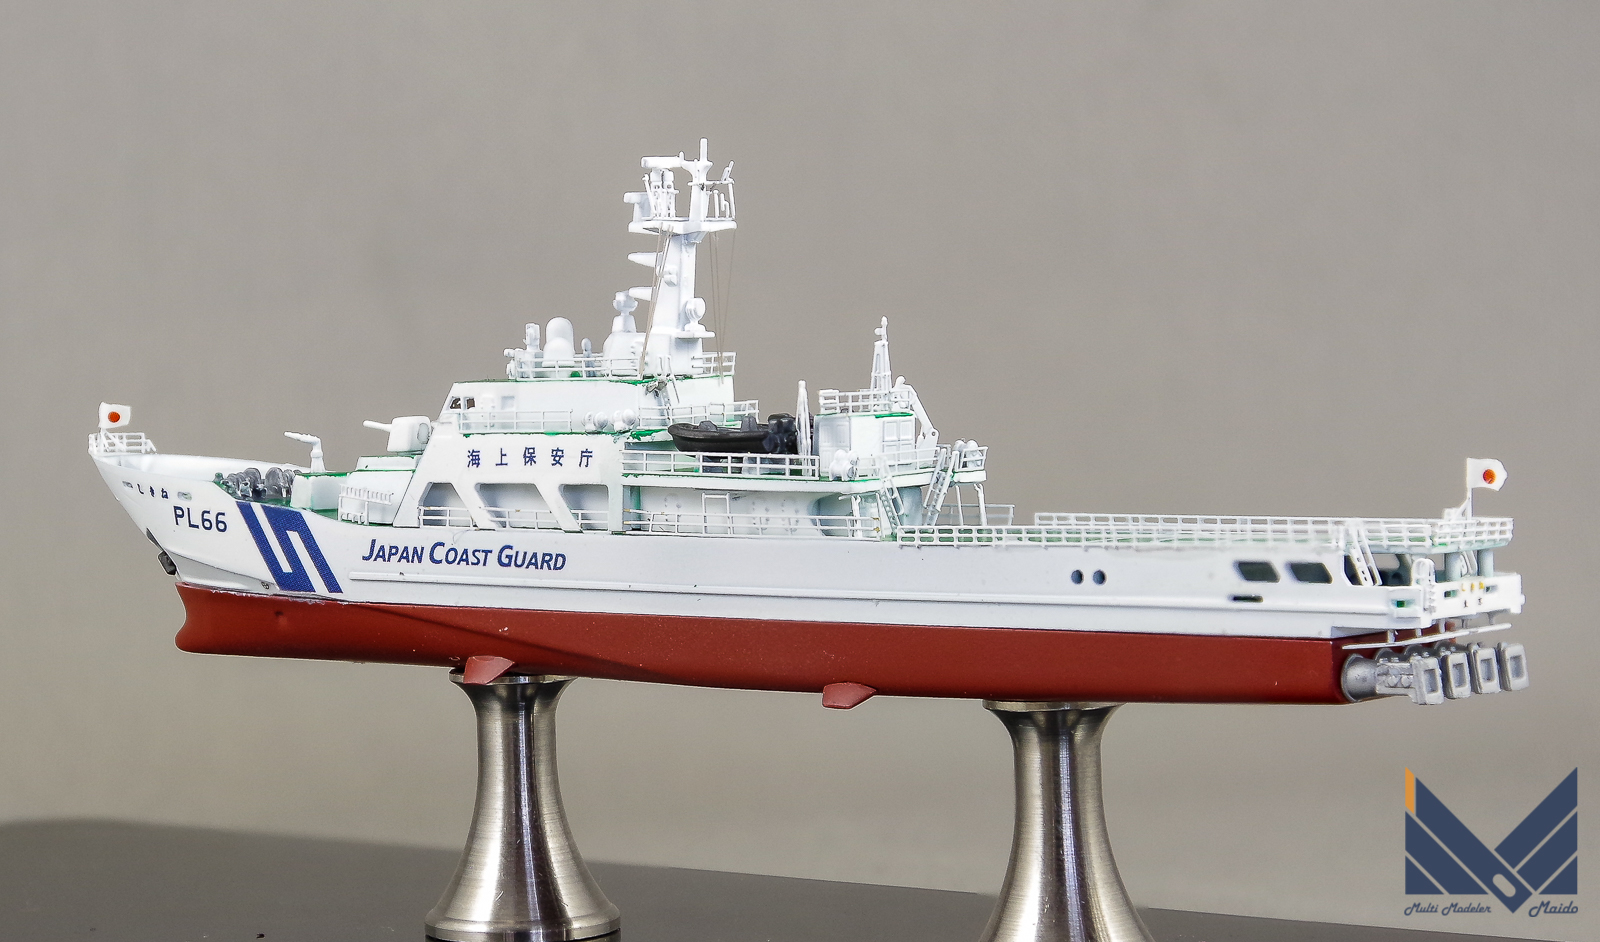 ピットロード 1/700 海上保安庁はてるま型巡視船 「しきね」完成品 JCG